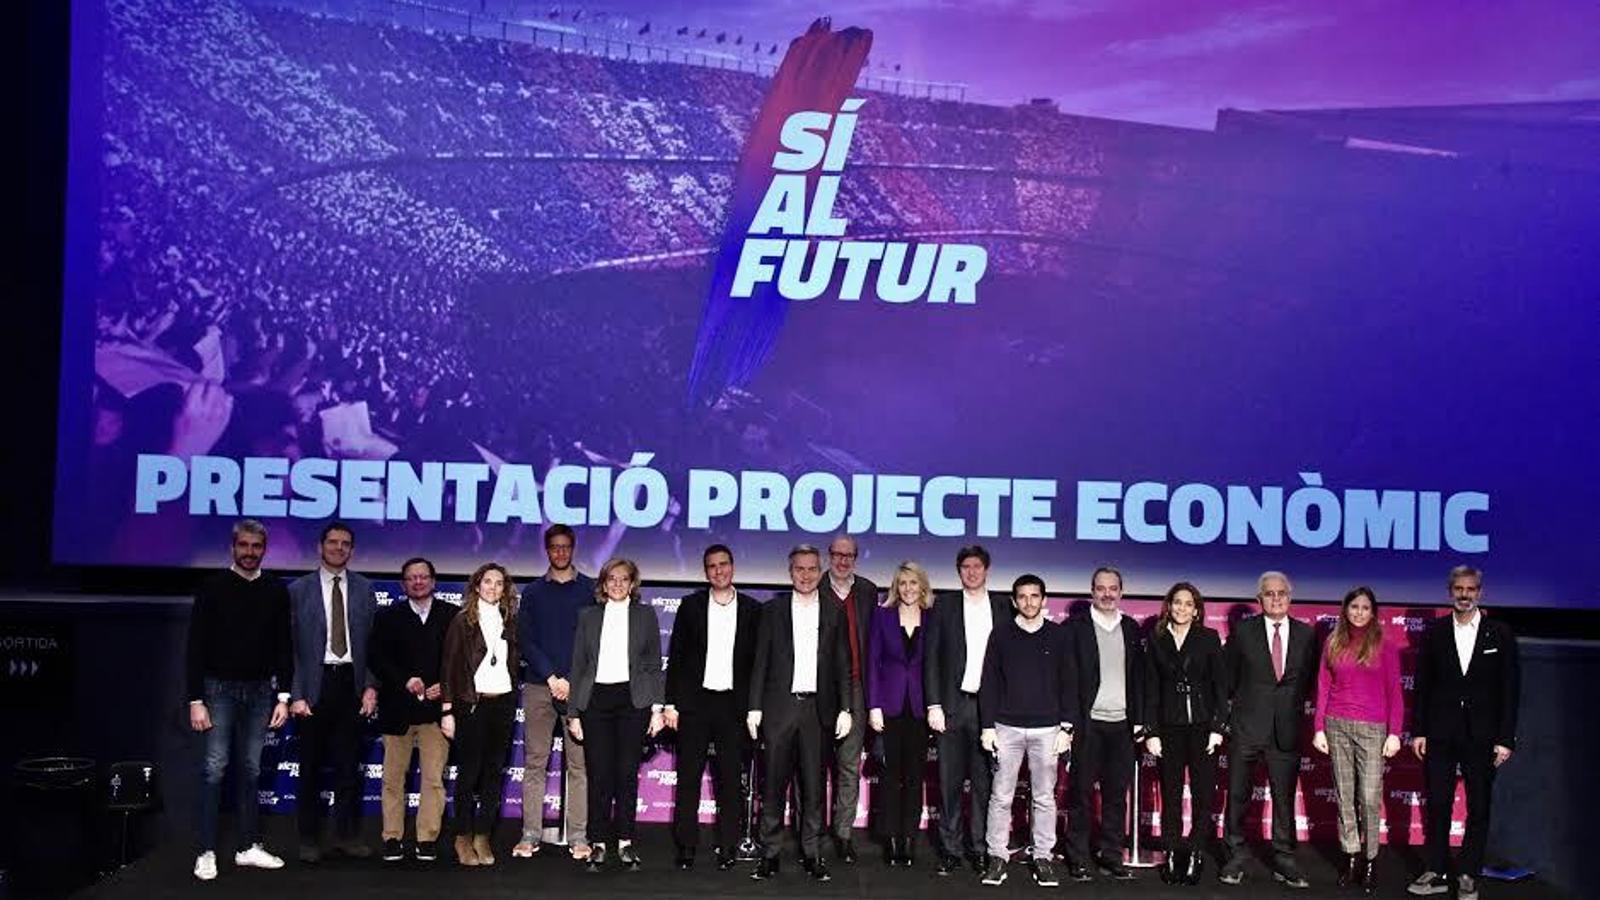 Font rellançarà econòmicament el Barça de la mà de l'univers 'start-up'  català (Martí Molina)